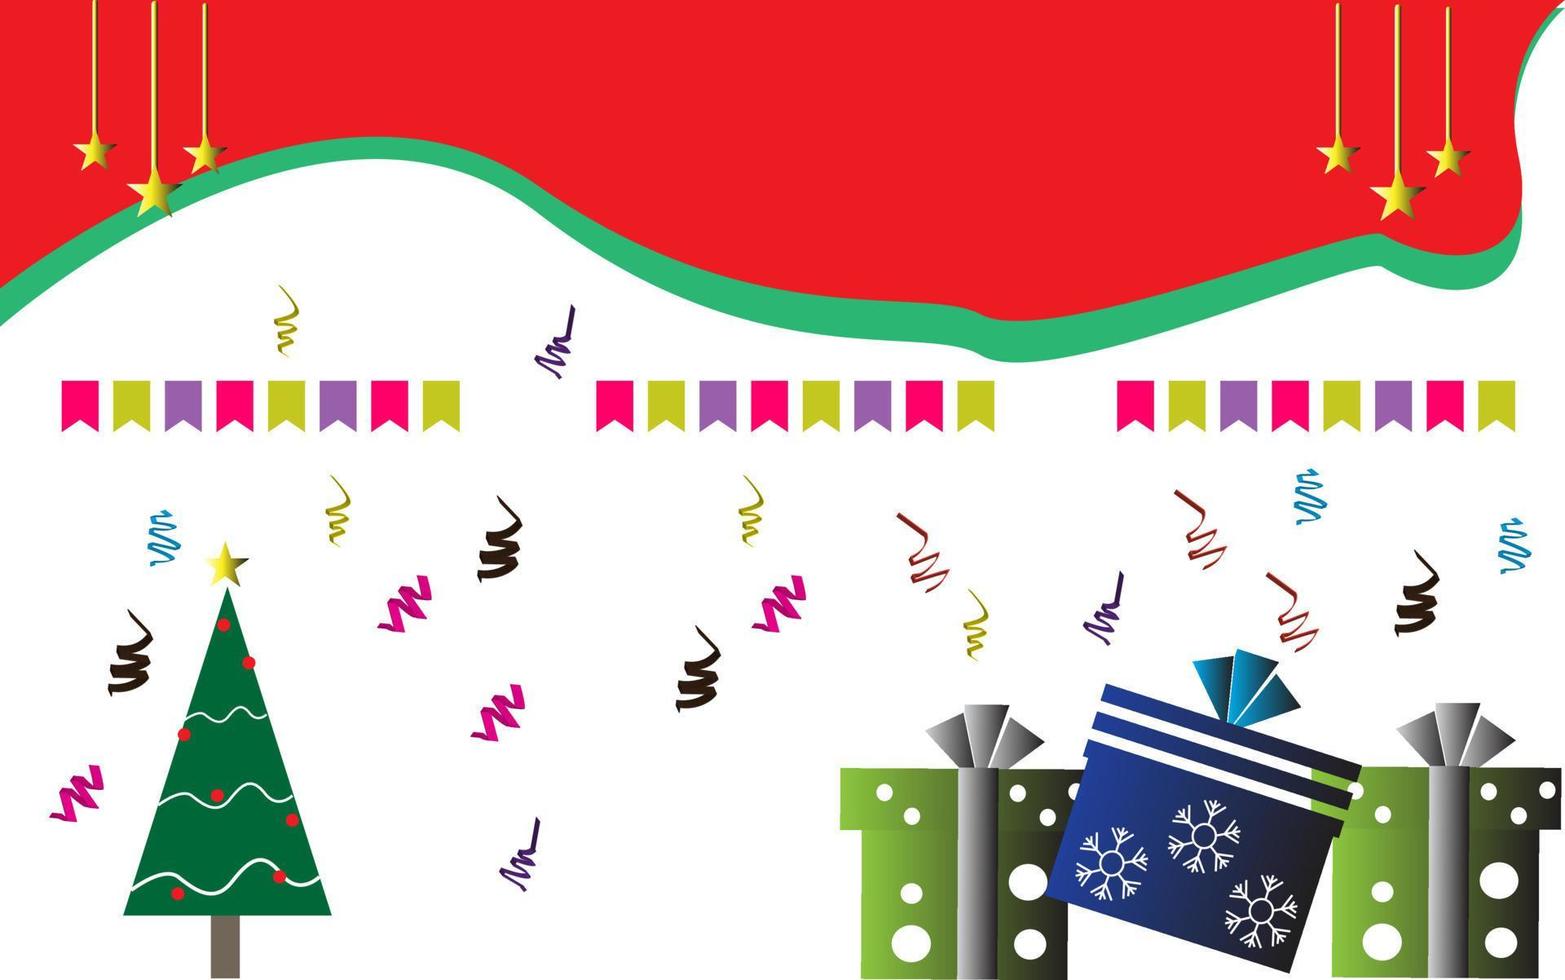 geschmückter weihnachtsbaum mit geschenkboxen, stern, lichtern, kugeln und lampen. Frohe Weihnachten und ein glückliches neues Jahr. flache Vektorillustration. vektor